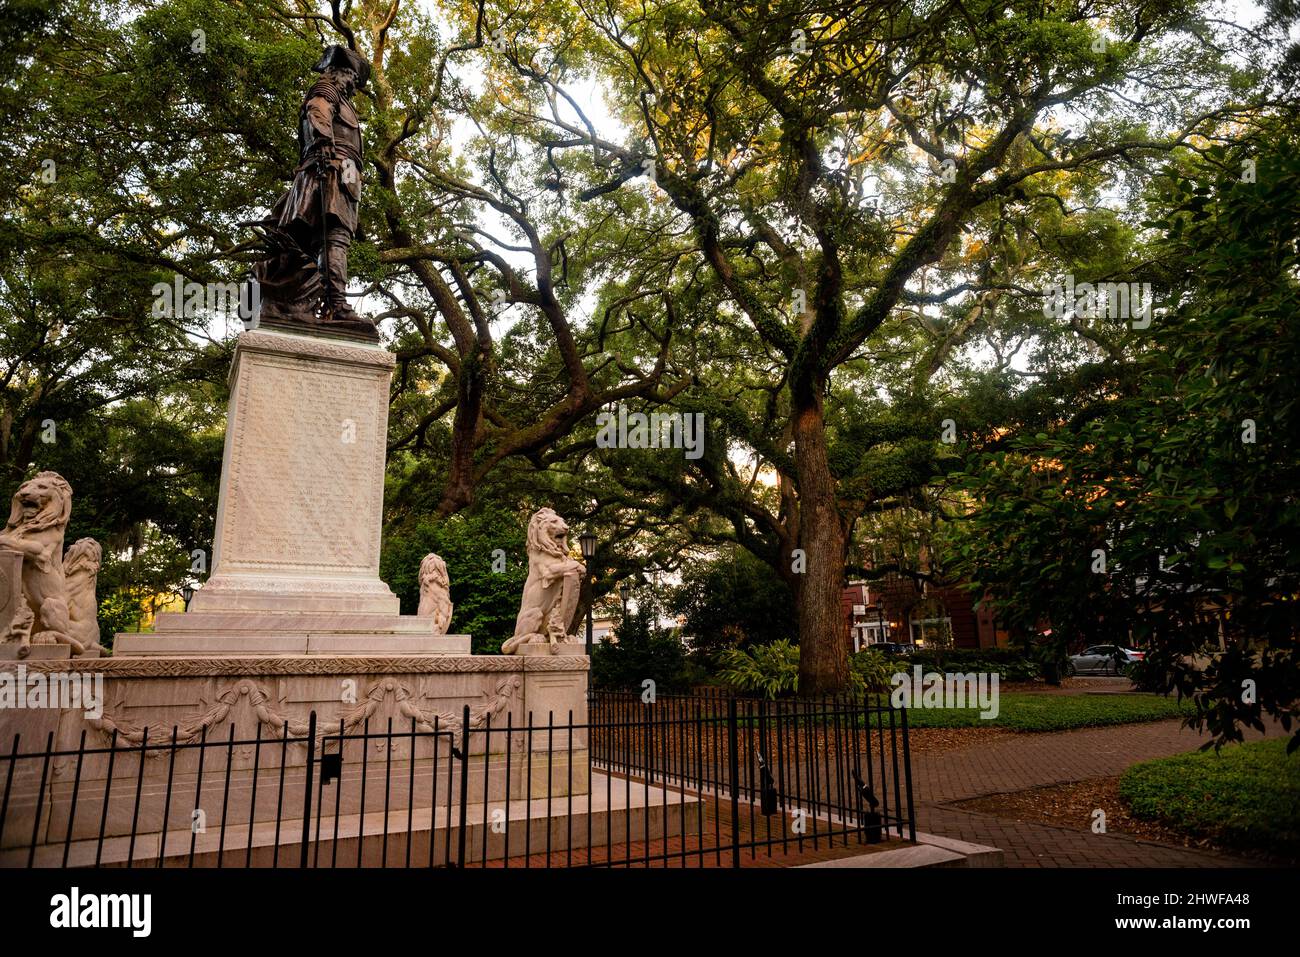 Chippewa Square monumento al fondatore di Savannah e alla colonia della Georgia, il generale James Edward Oglethorpe. Foto Stock